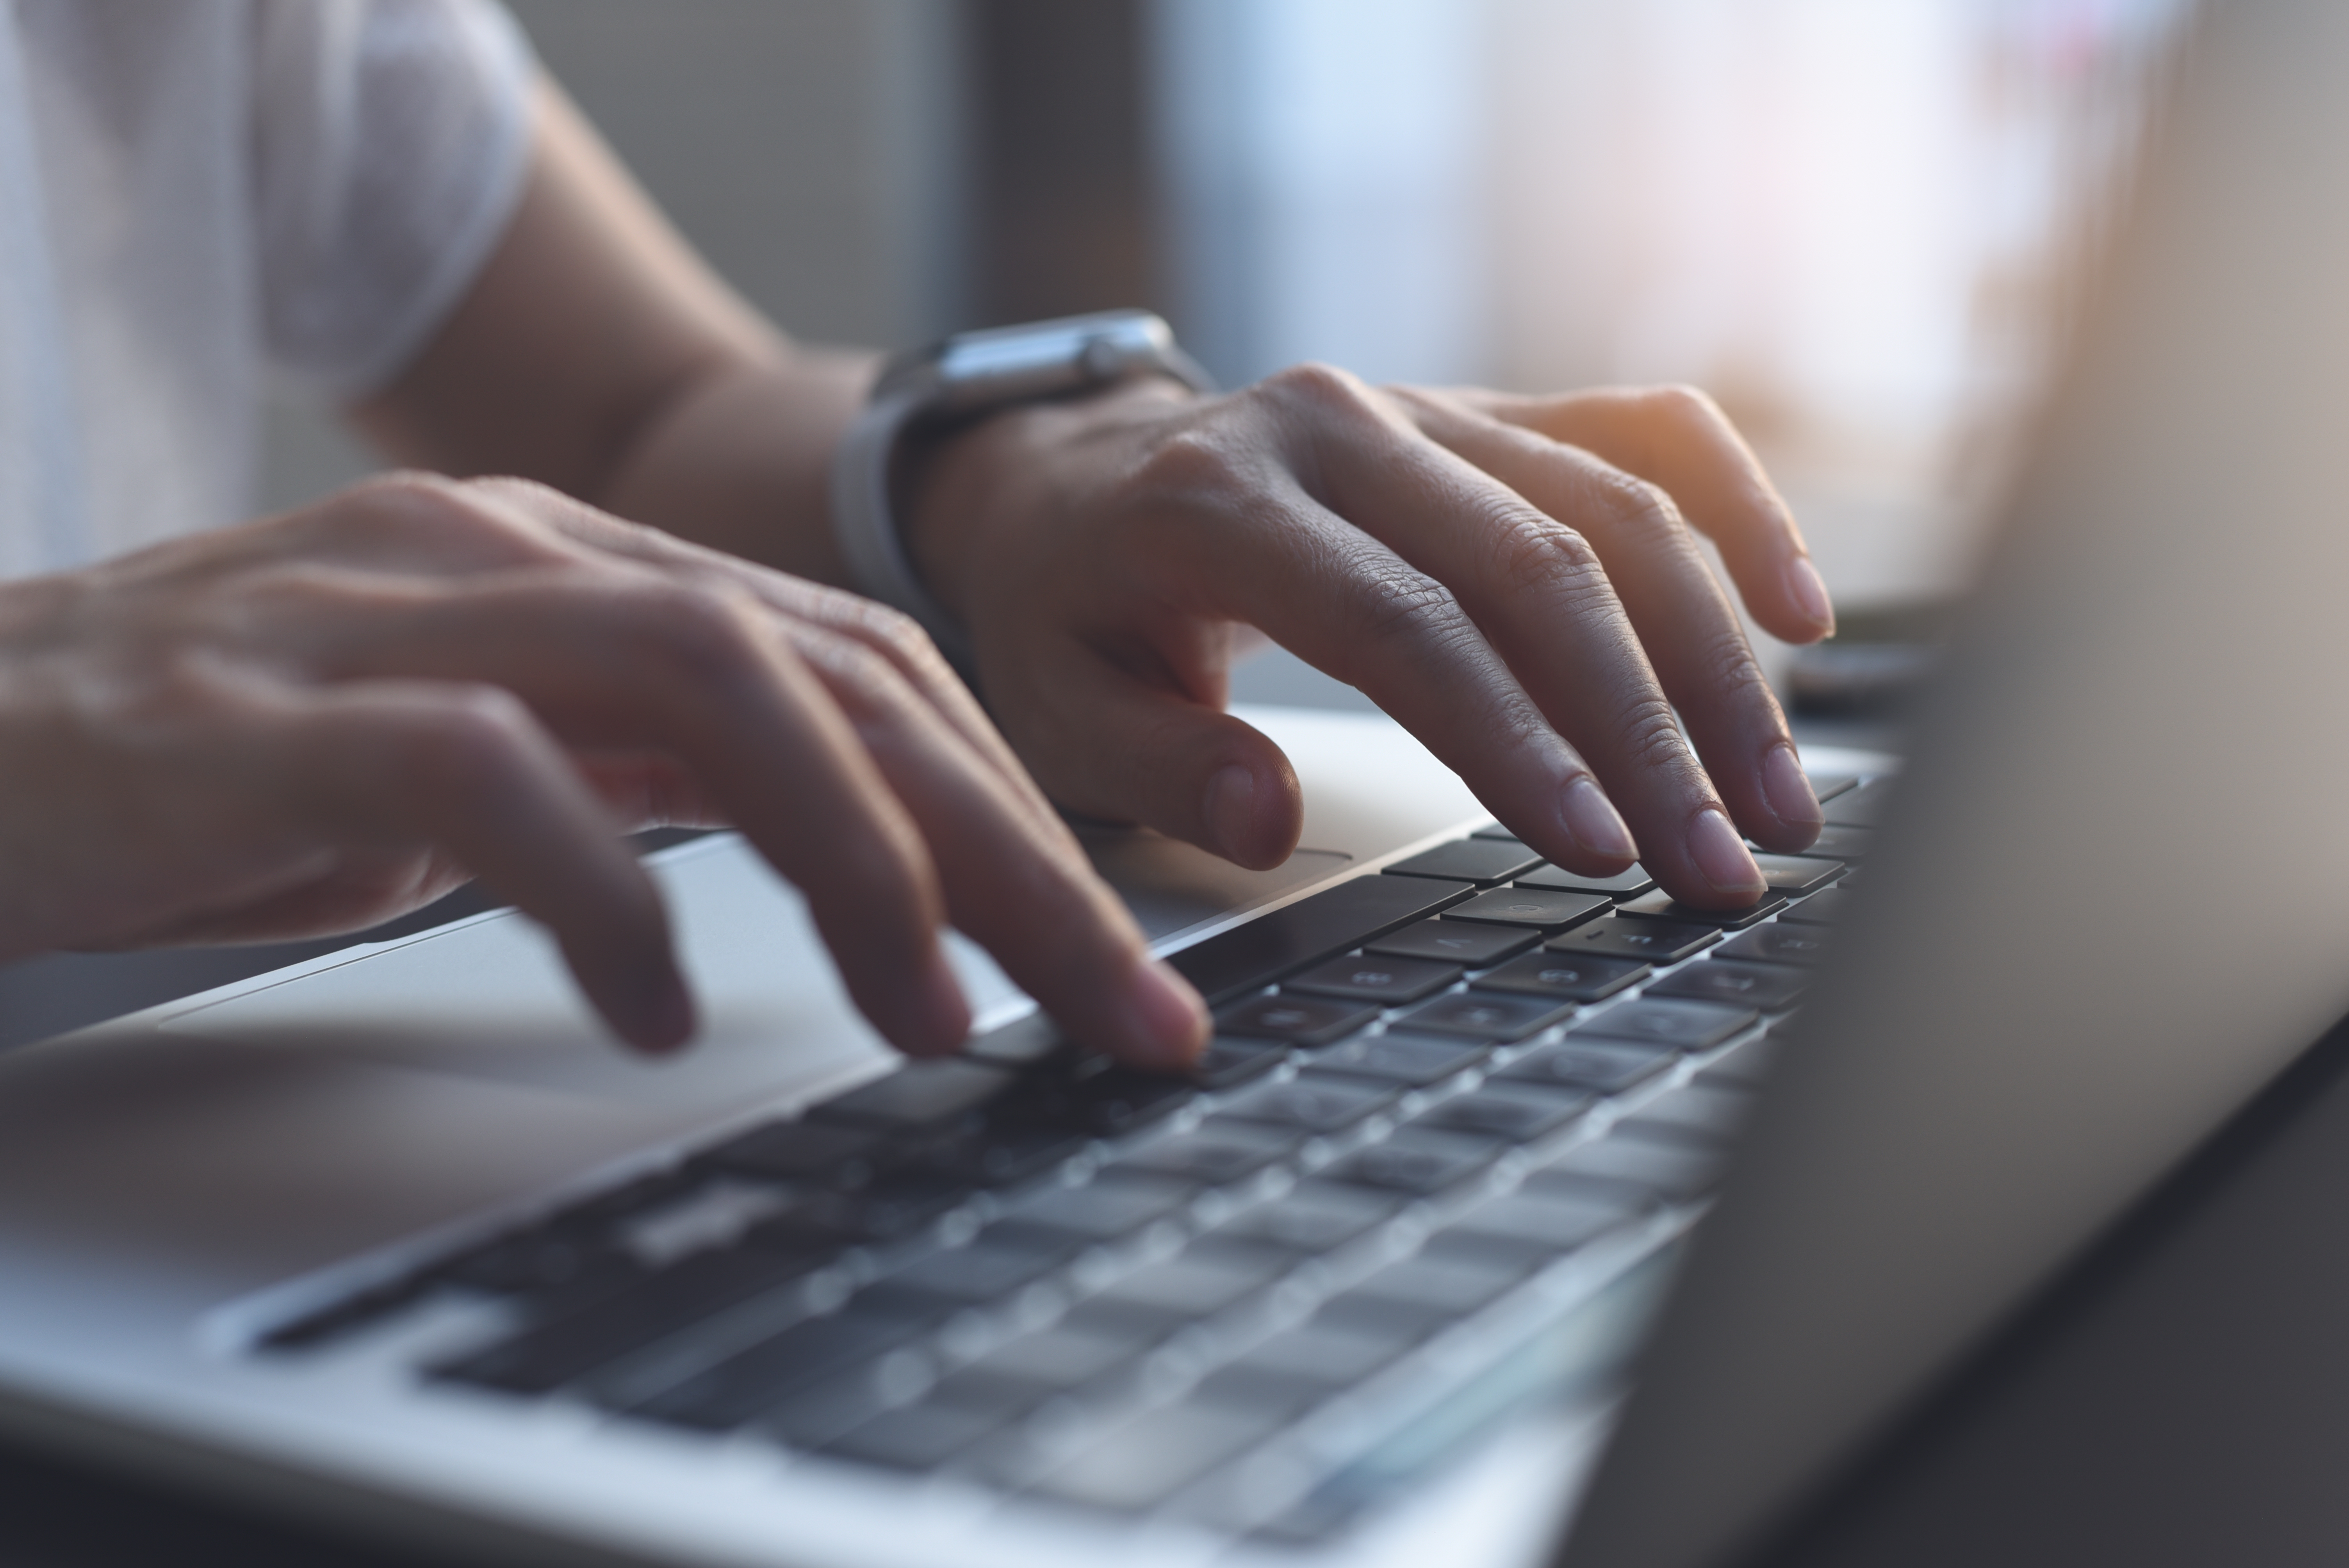 Imagen de cerca de unas manos de mujer escribiendo en el teclado de un ordenador portátil. | Fuente: Shutterstock